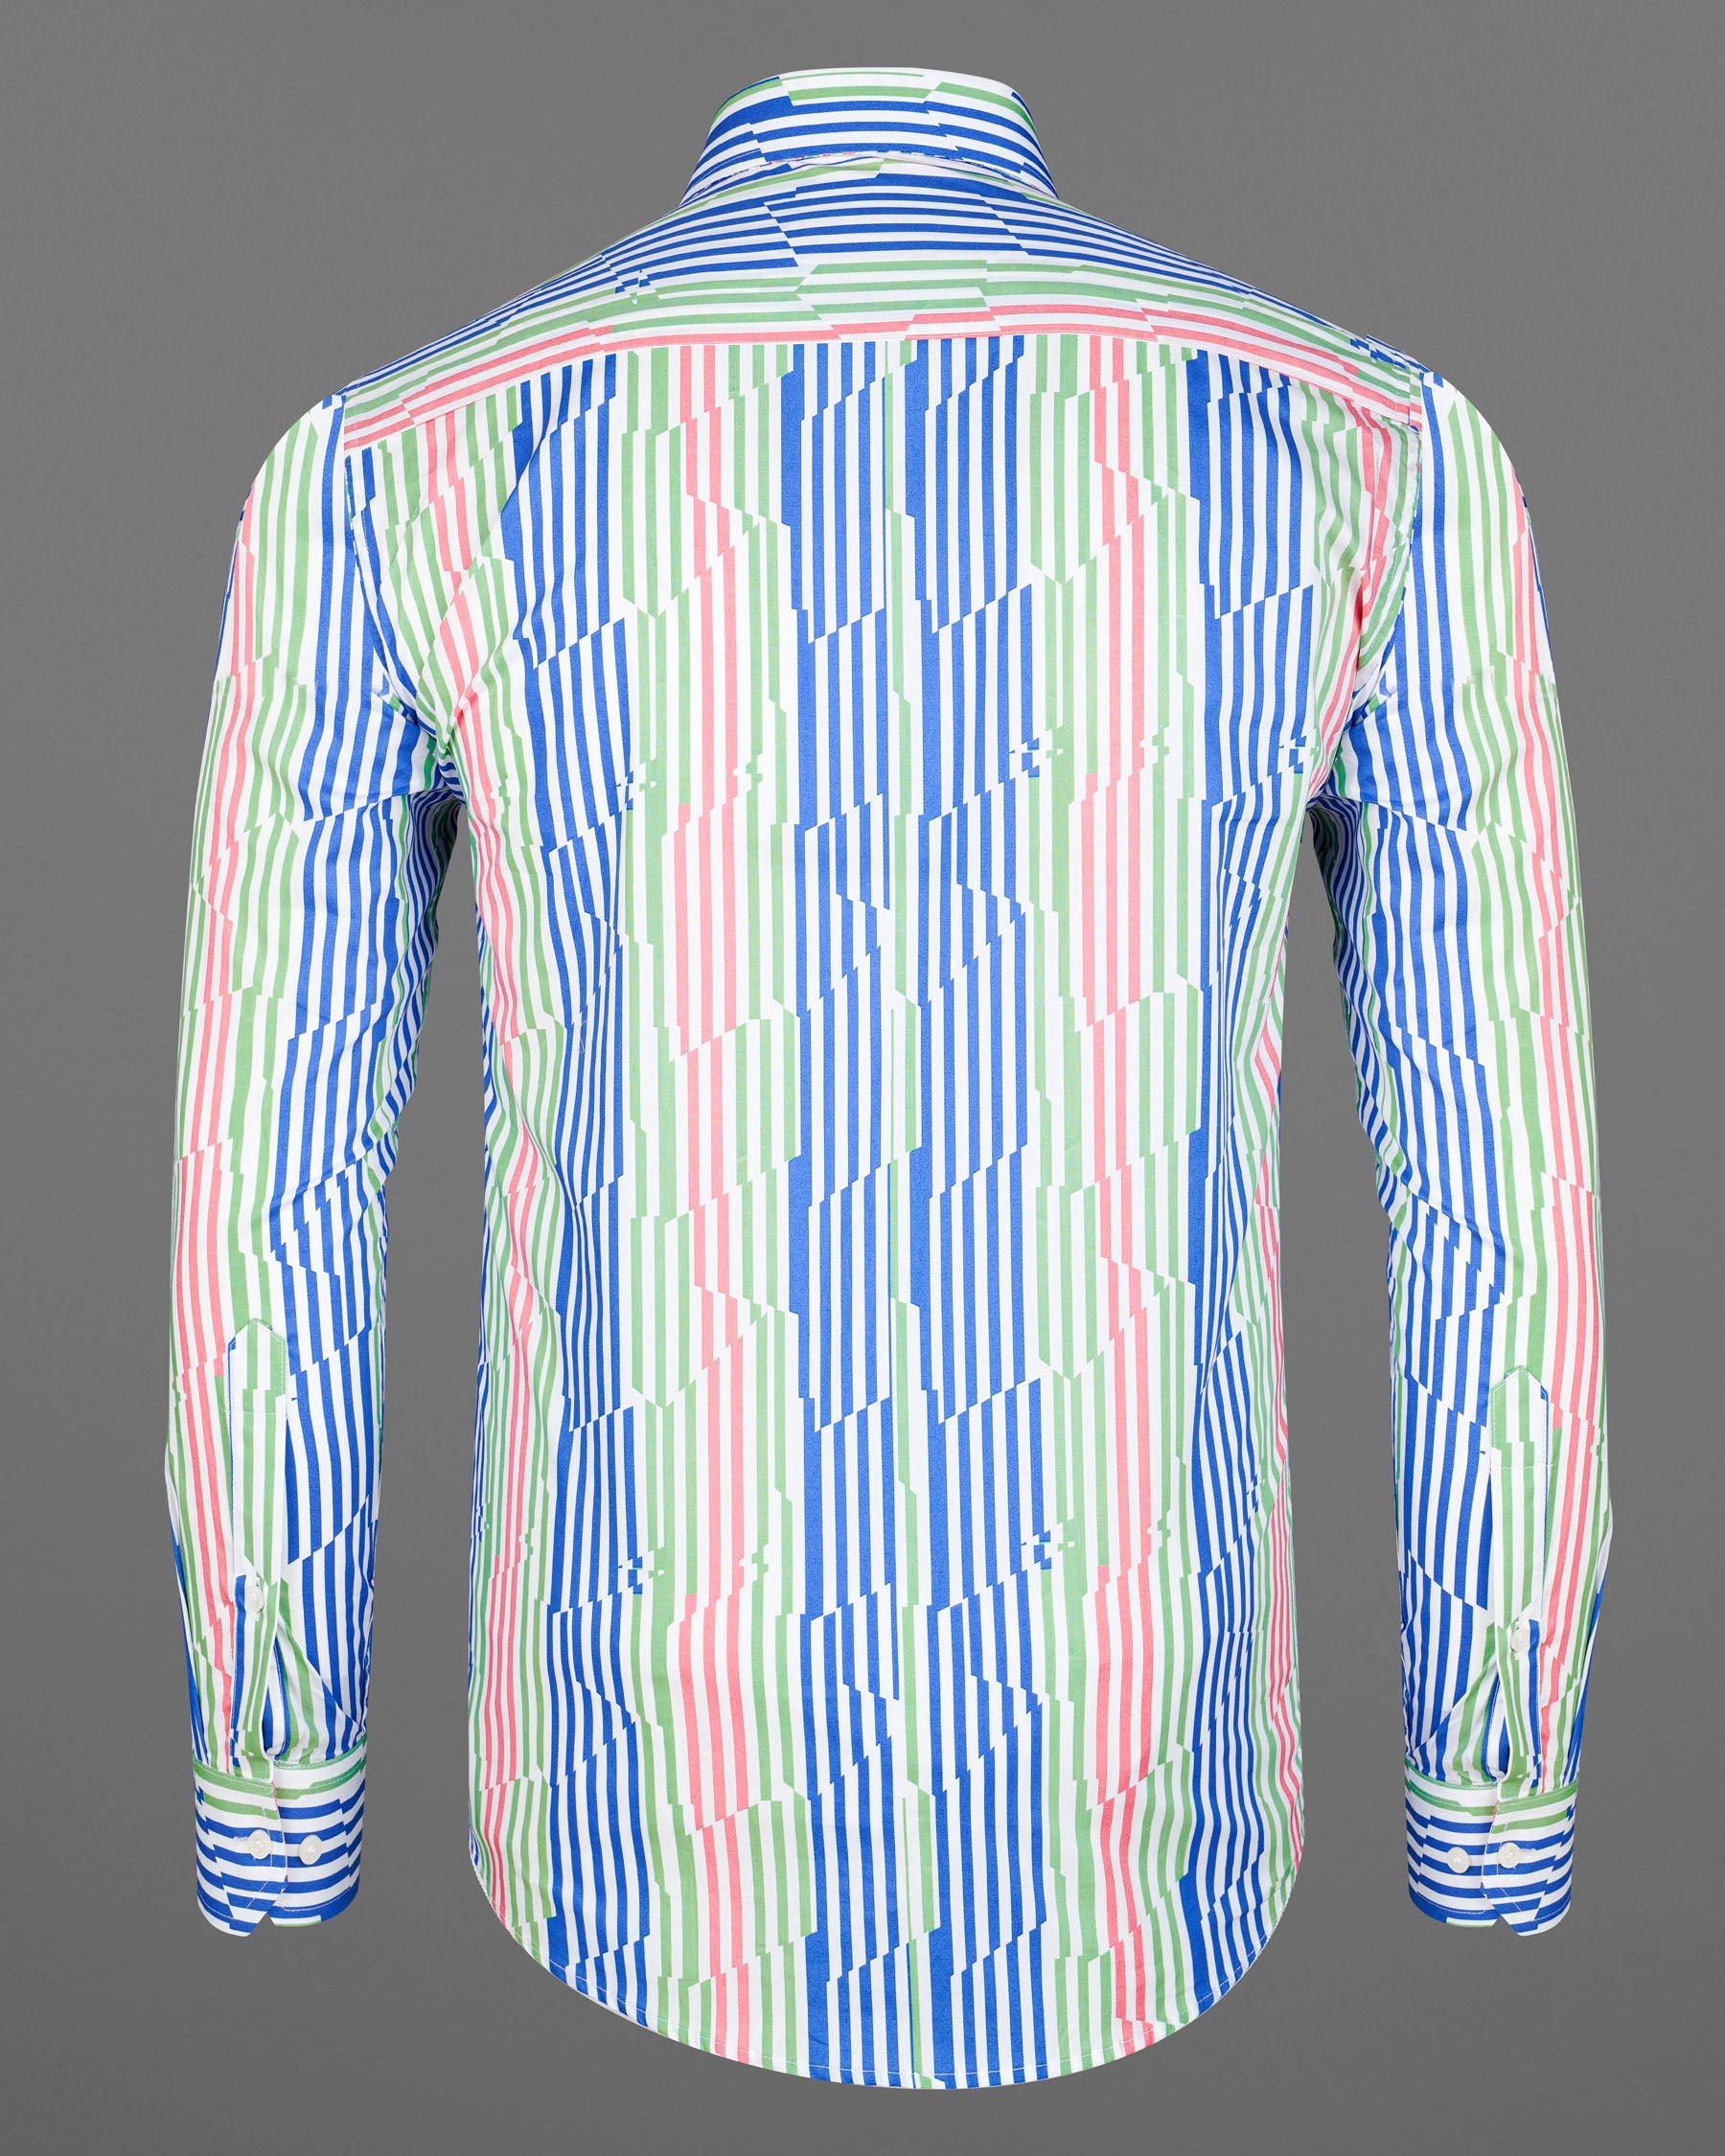 Cornflower Blue With Gum Leaf Green And Multicolored Striped Premium Cotton Shirt 7892-CA -38,7892-CA -H-38,7892-CA -39,7892-CA -H-39,7892-CA -40,7892-CA -H-40,7892-CA -42,7892-CA -H-42,7892-CA -44,7892-CA -H-44,7892-CA -46,7892-CA -H-46,7892-CA -48,7892-CA -H-48,7892-CA -50,7892-CA -H-50,7892-CA -52,7892-CA -H-52